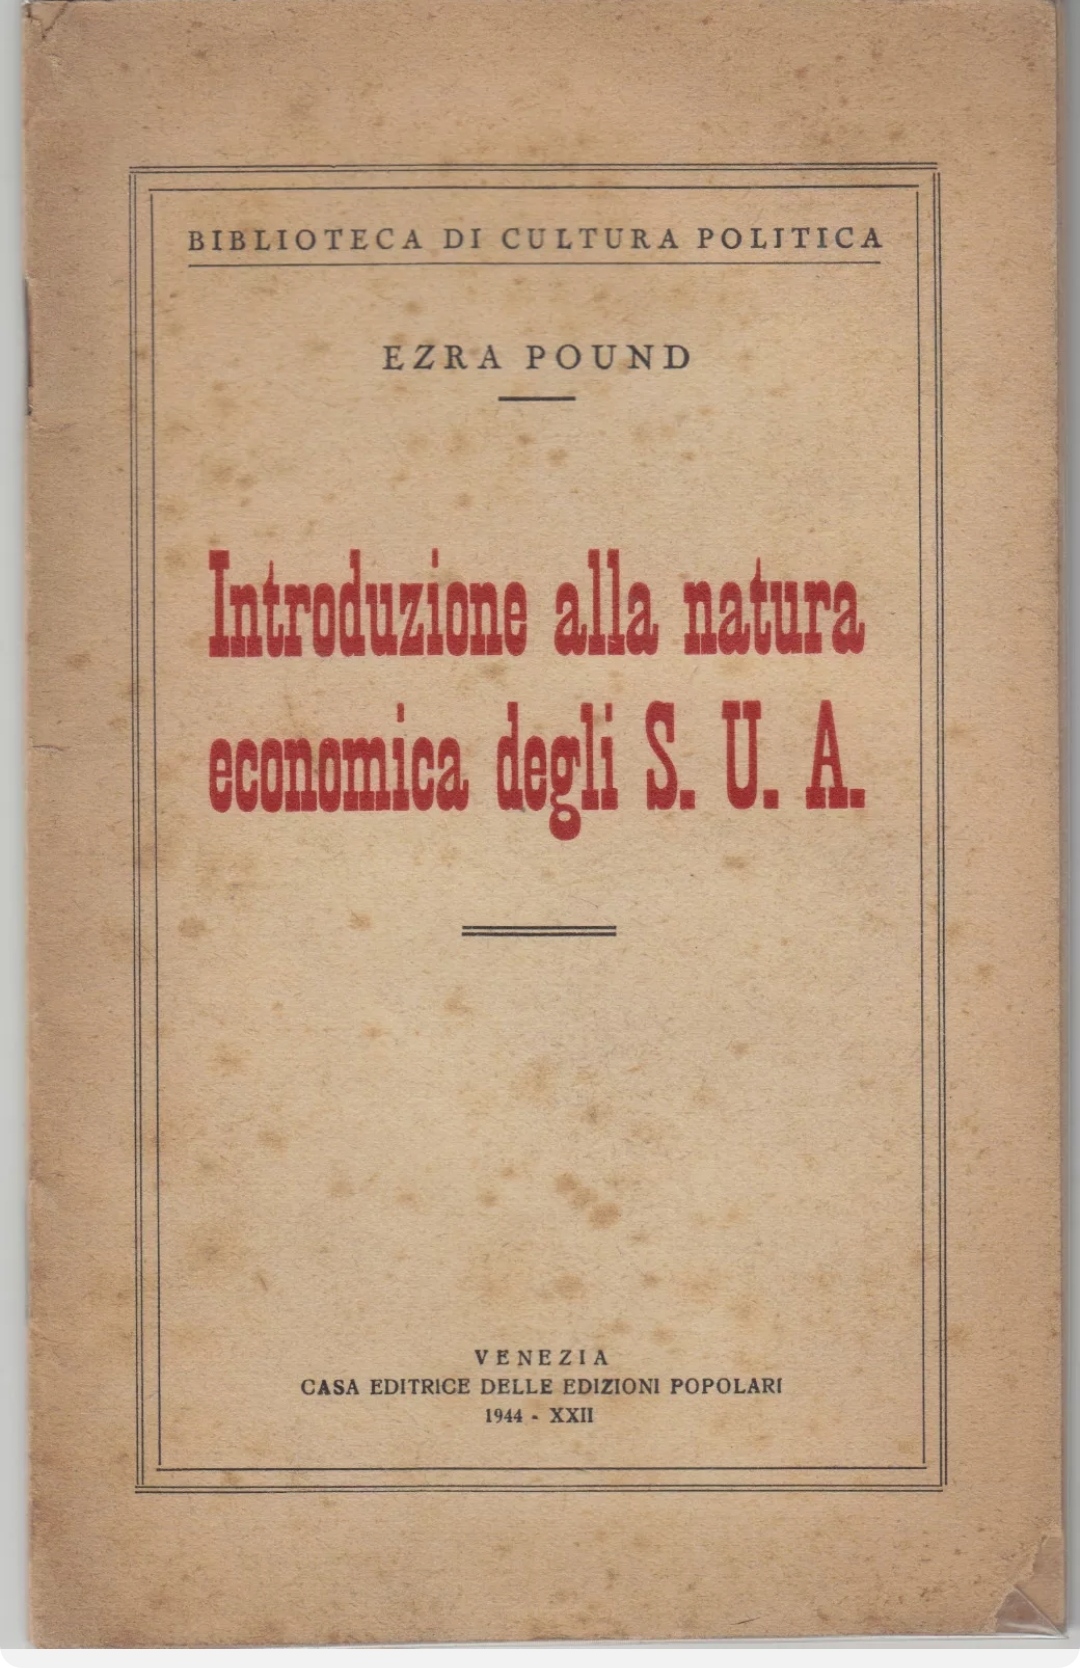 Ezra Pound natura economica S.U.A. 1944 America fascismo RSI Repubblica Sociale